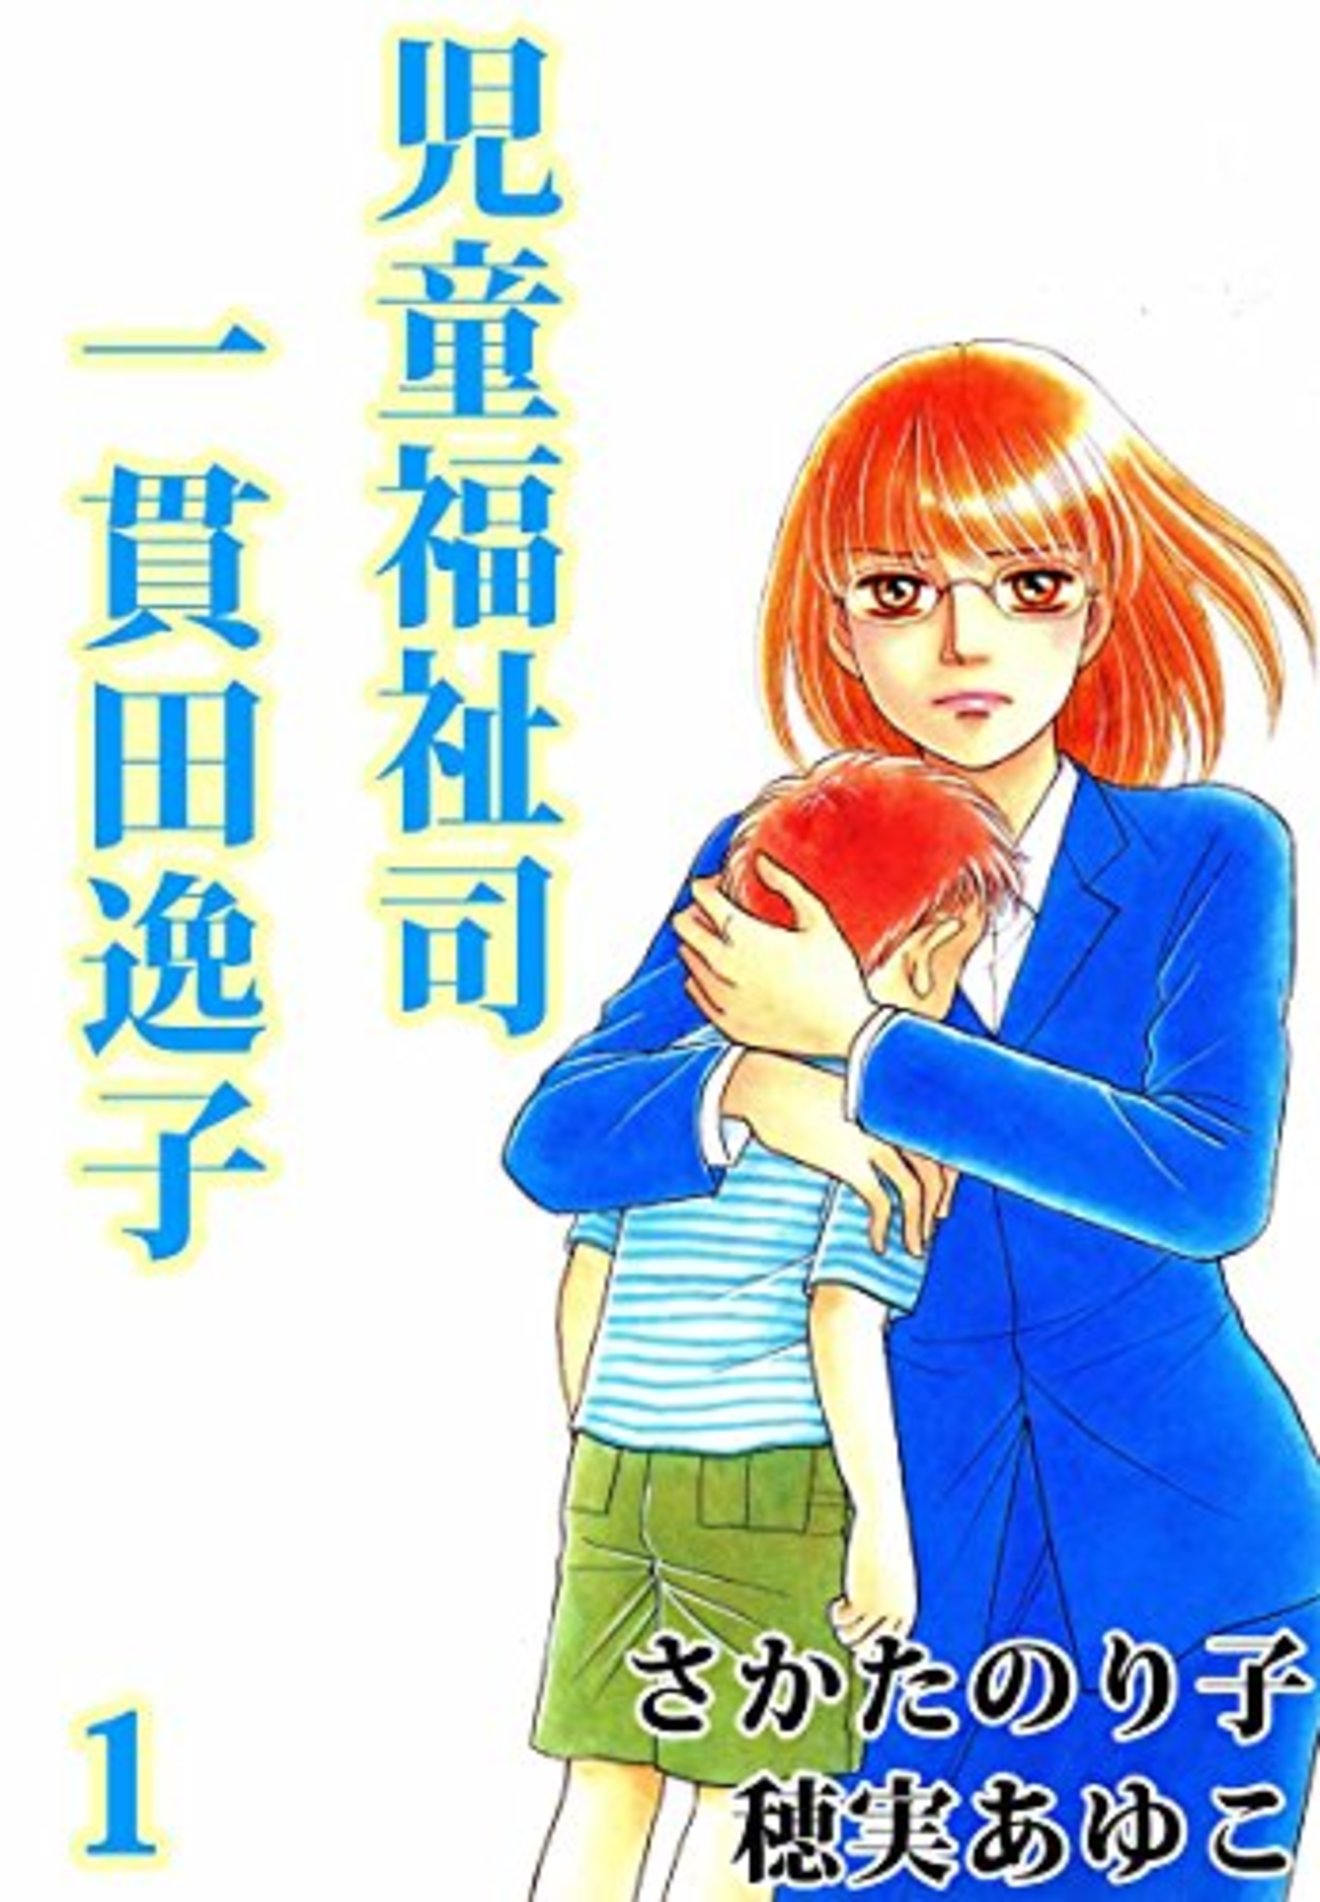 児童福祉司 一貫田逸子 全2巻の考えさせられるエピソードをネタバレ紹介 漫画も ホンシェルジュ